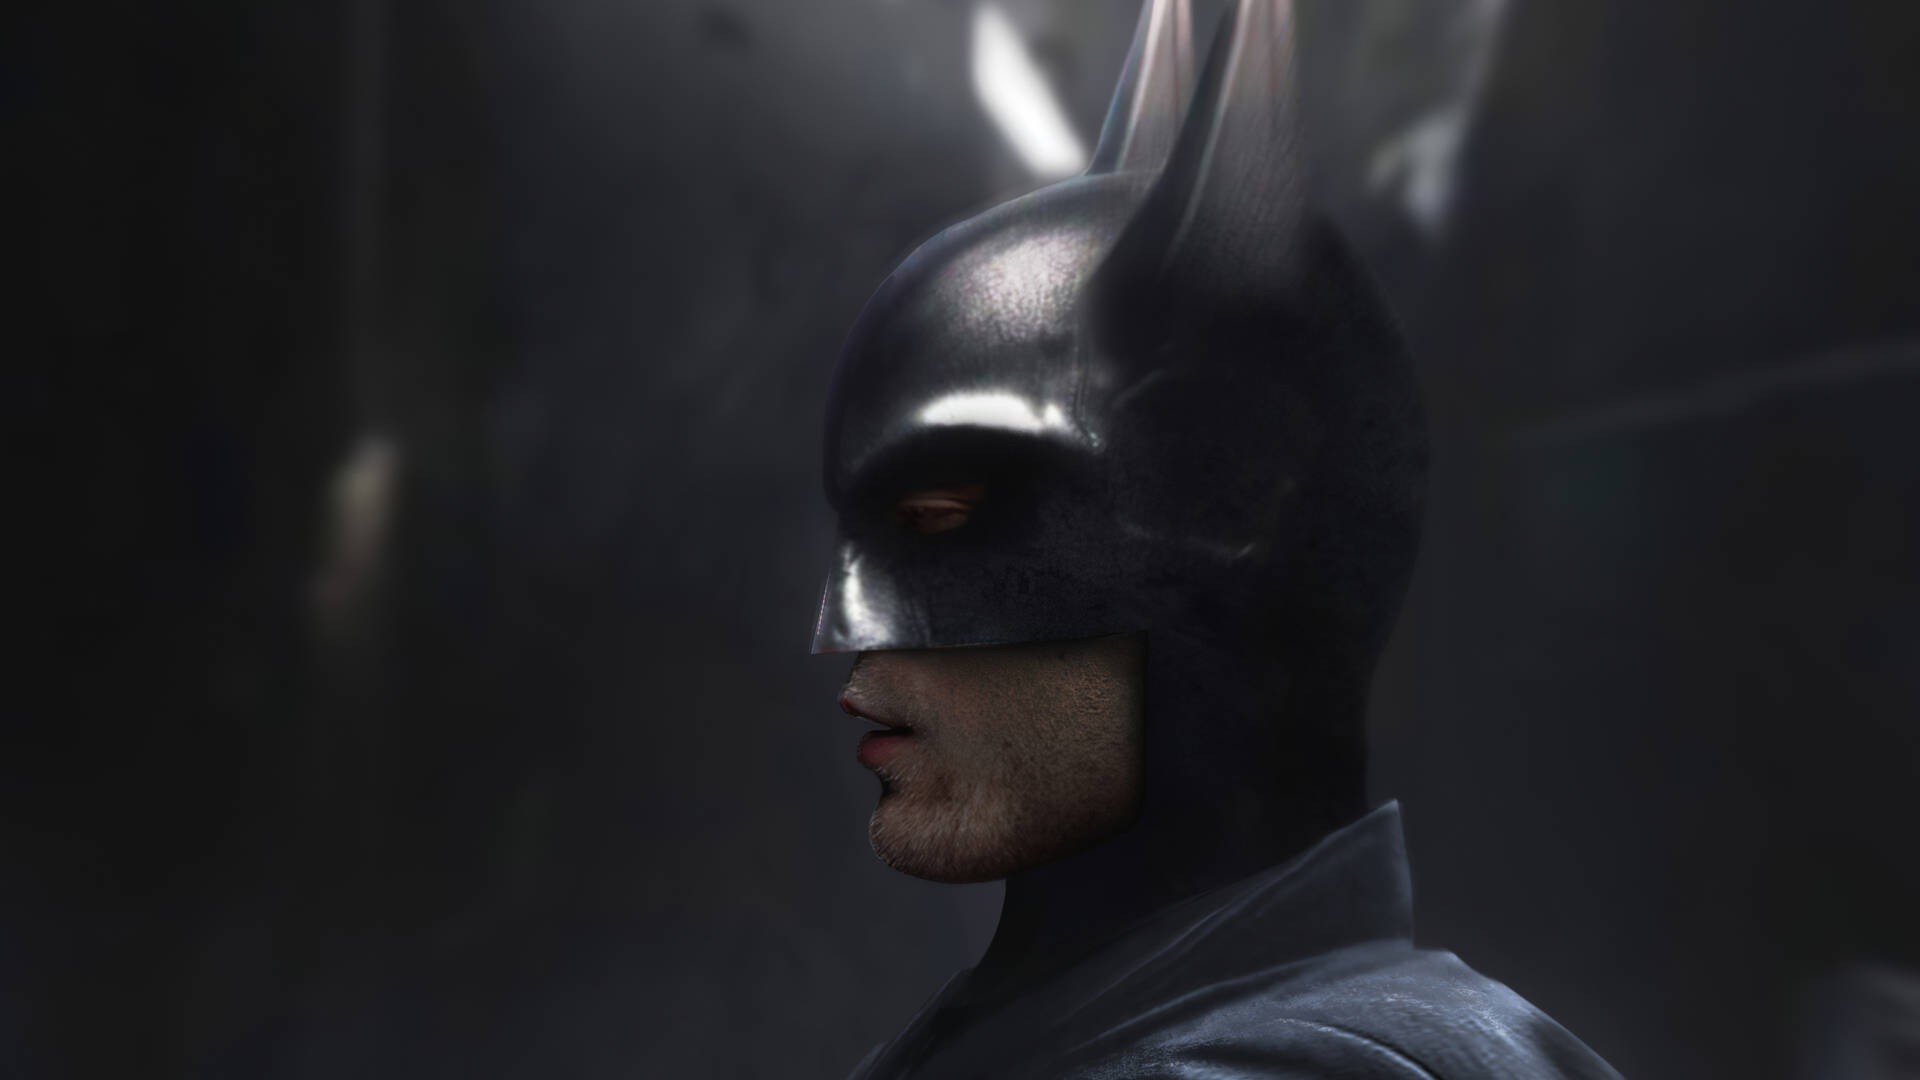 Den Batman Side Profile tapeter overfører den skræmmende beskyttelse af Gotham til dit skrivebord. Wallpaper